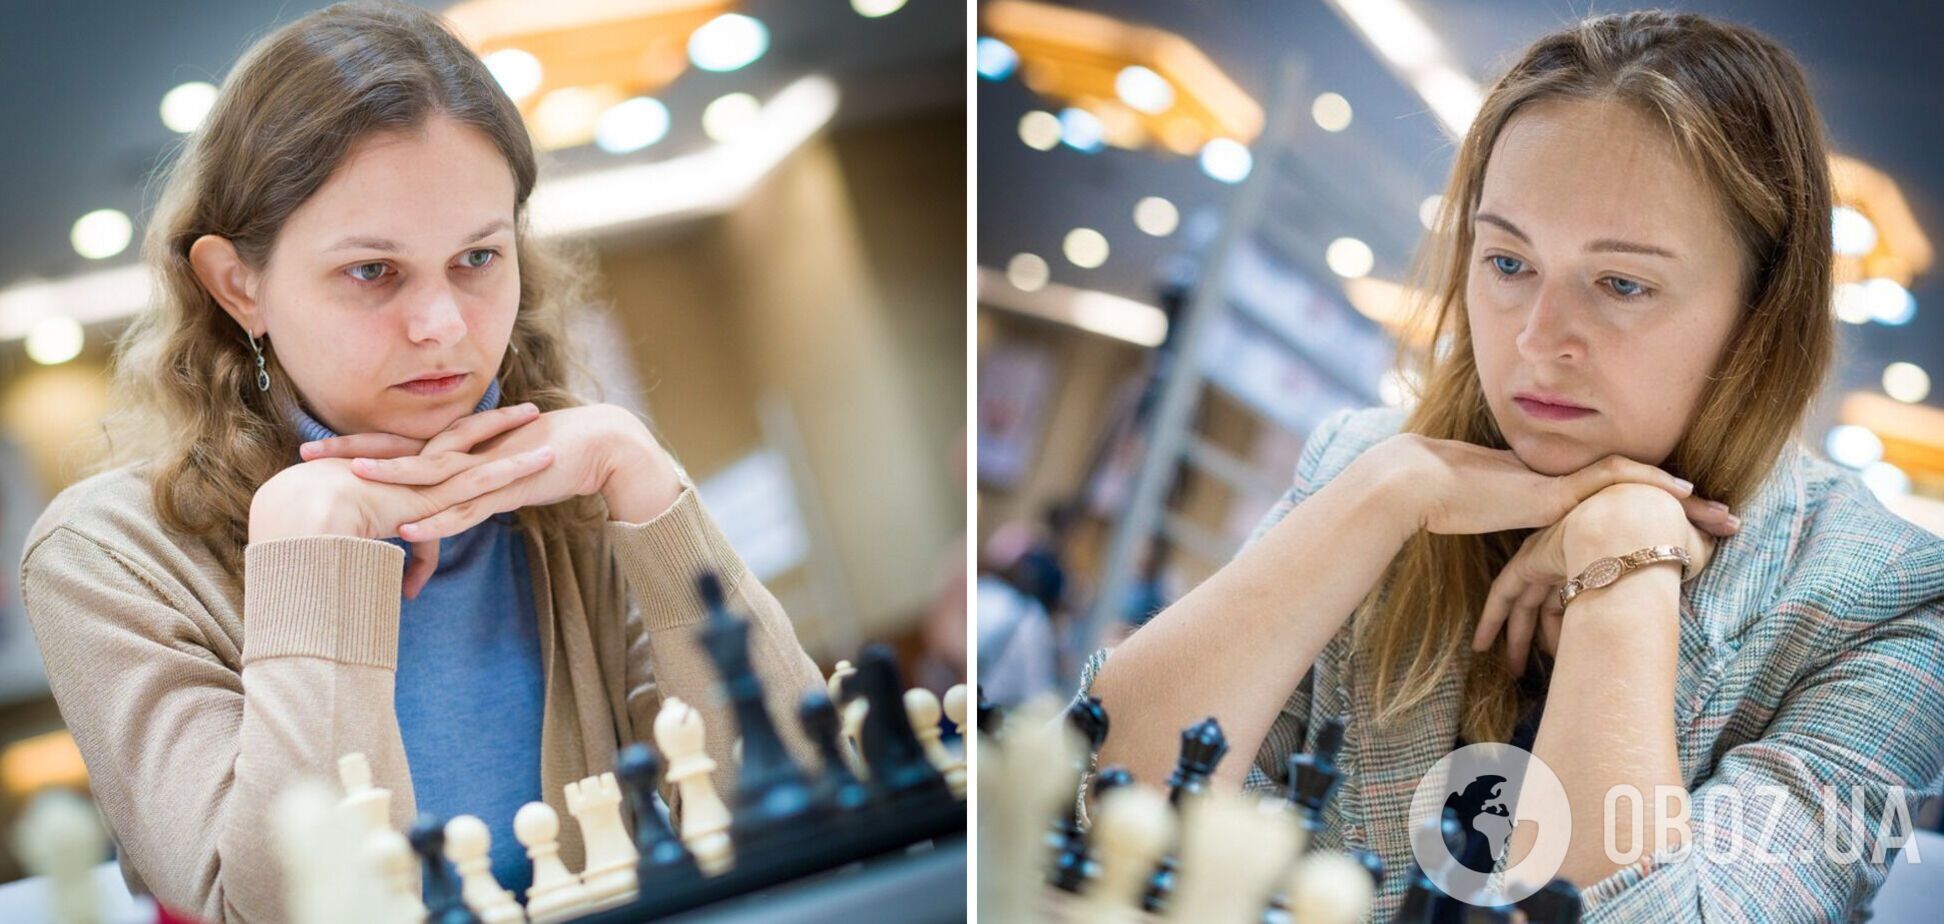 Украинки впервые за 16 лет выиграли шахматную Олимпиаду